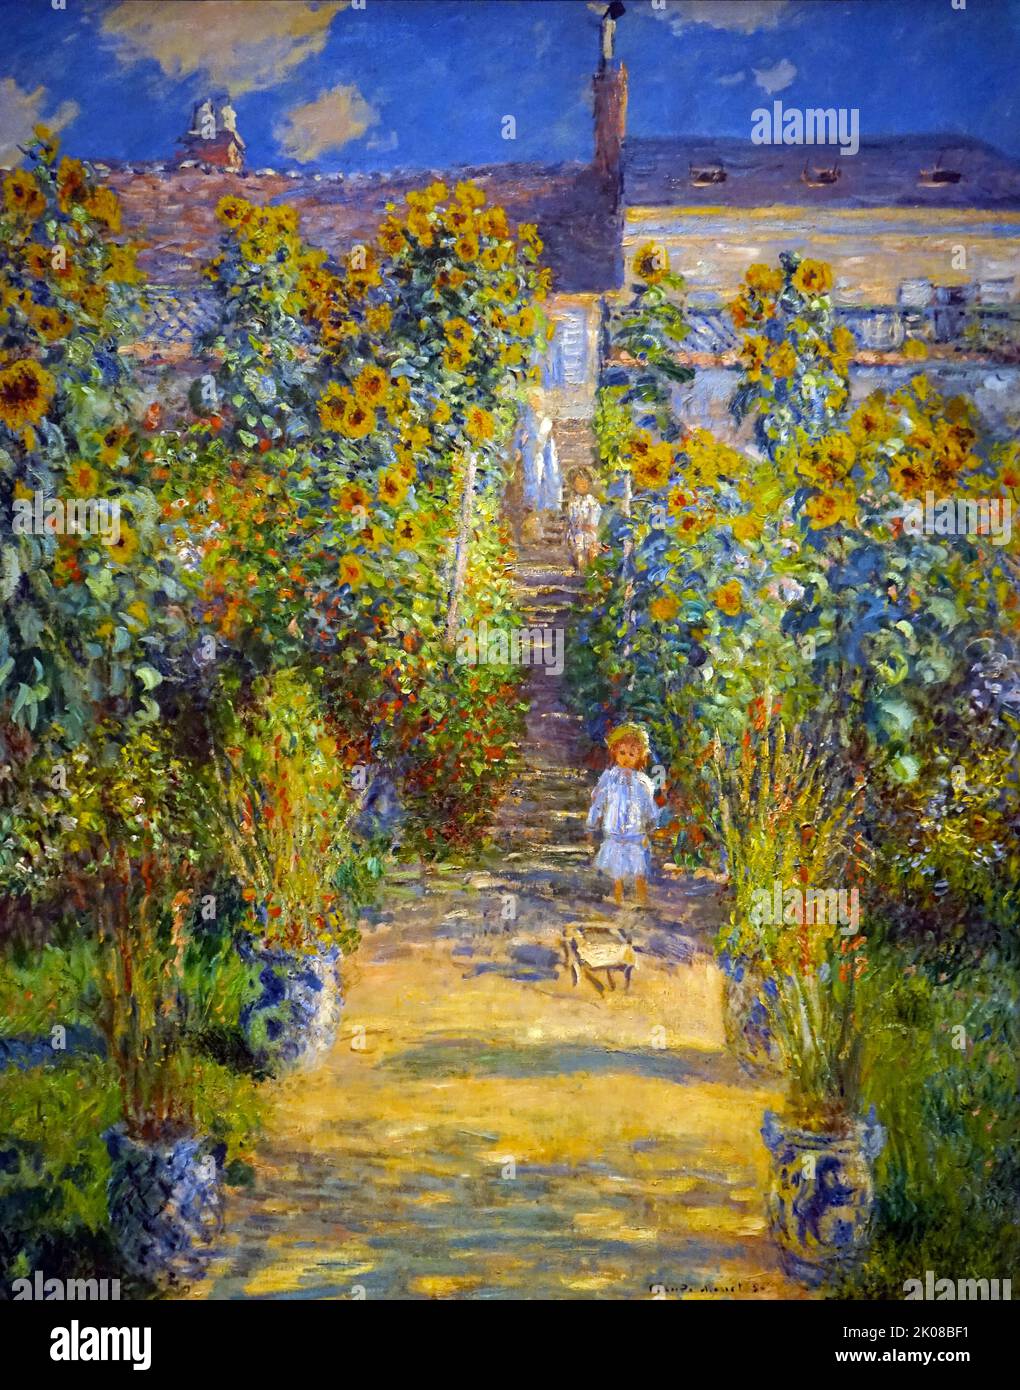 Le jardin de l'artiste par Oscar-Claude Monet (14 novembre 1840 - 5 décembre 1926) est un peintre français et fondateur de la peinture impressionniste qui est considéré comme un précurseur clé du modernisme, en particulier dans ses tentatives de peindre la nature telle qu'il l'a perçue Banque D'Images